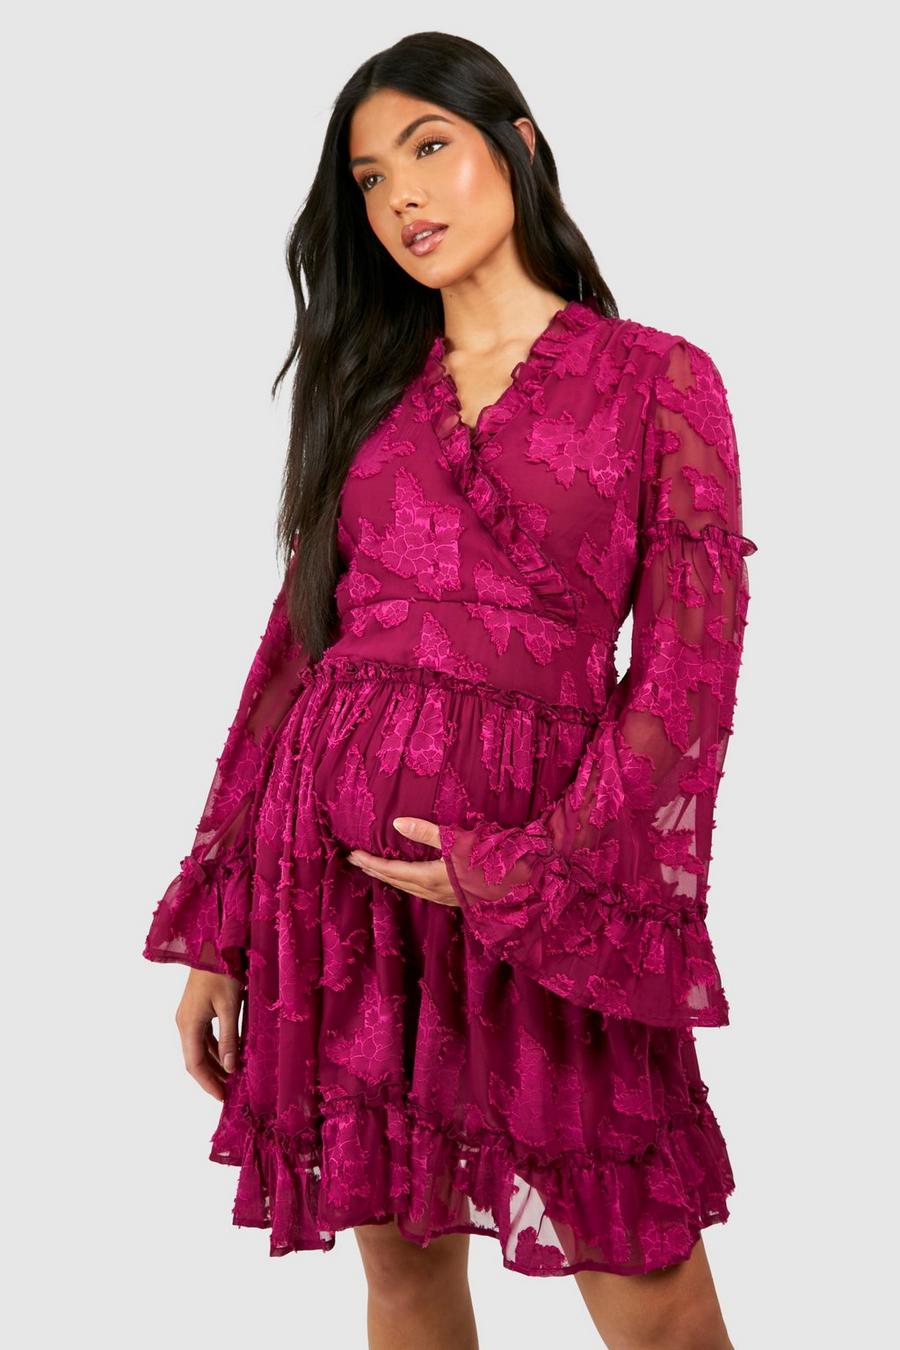 Maternité - Robe de grossesse courte fleurie à volants, Hot pink image number 1